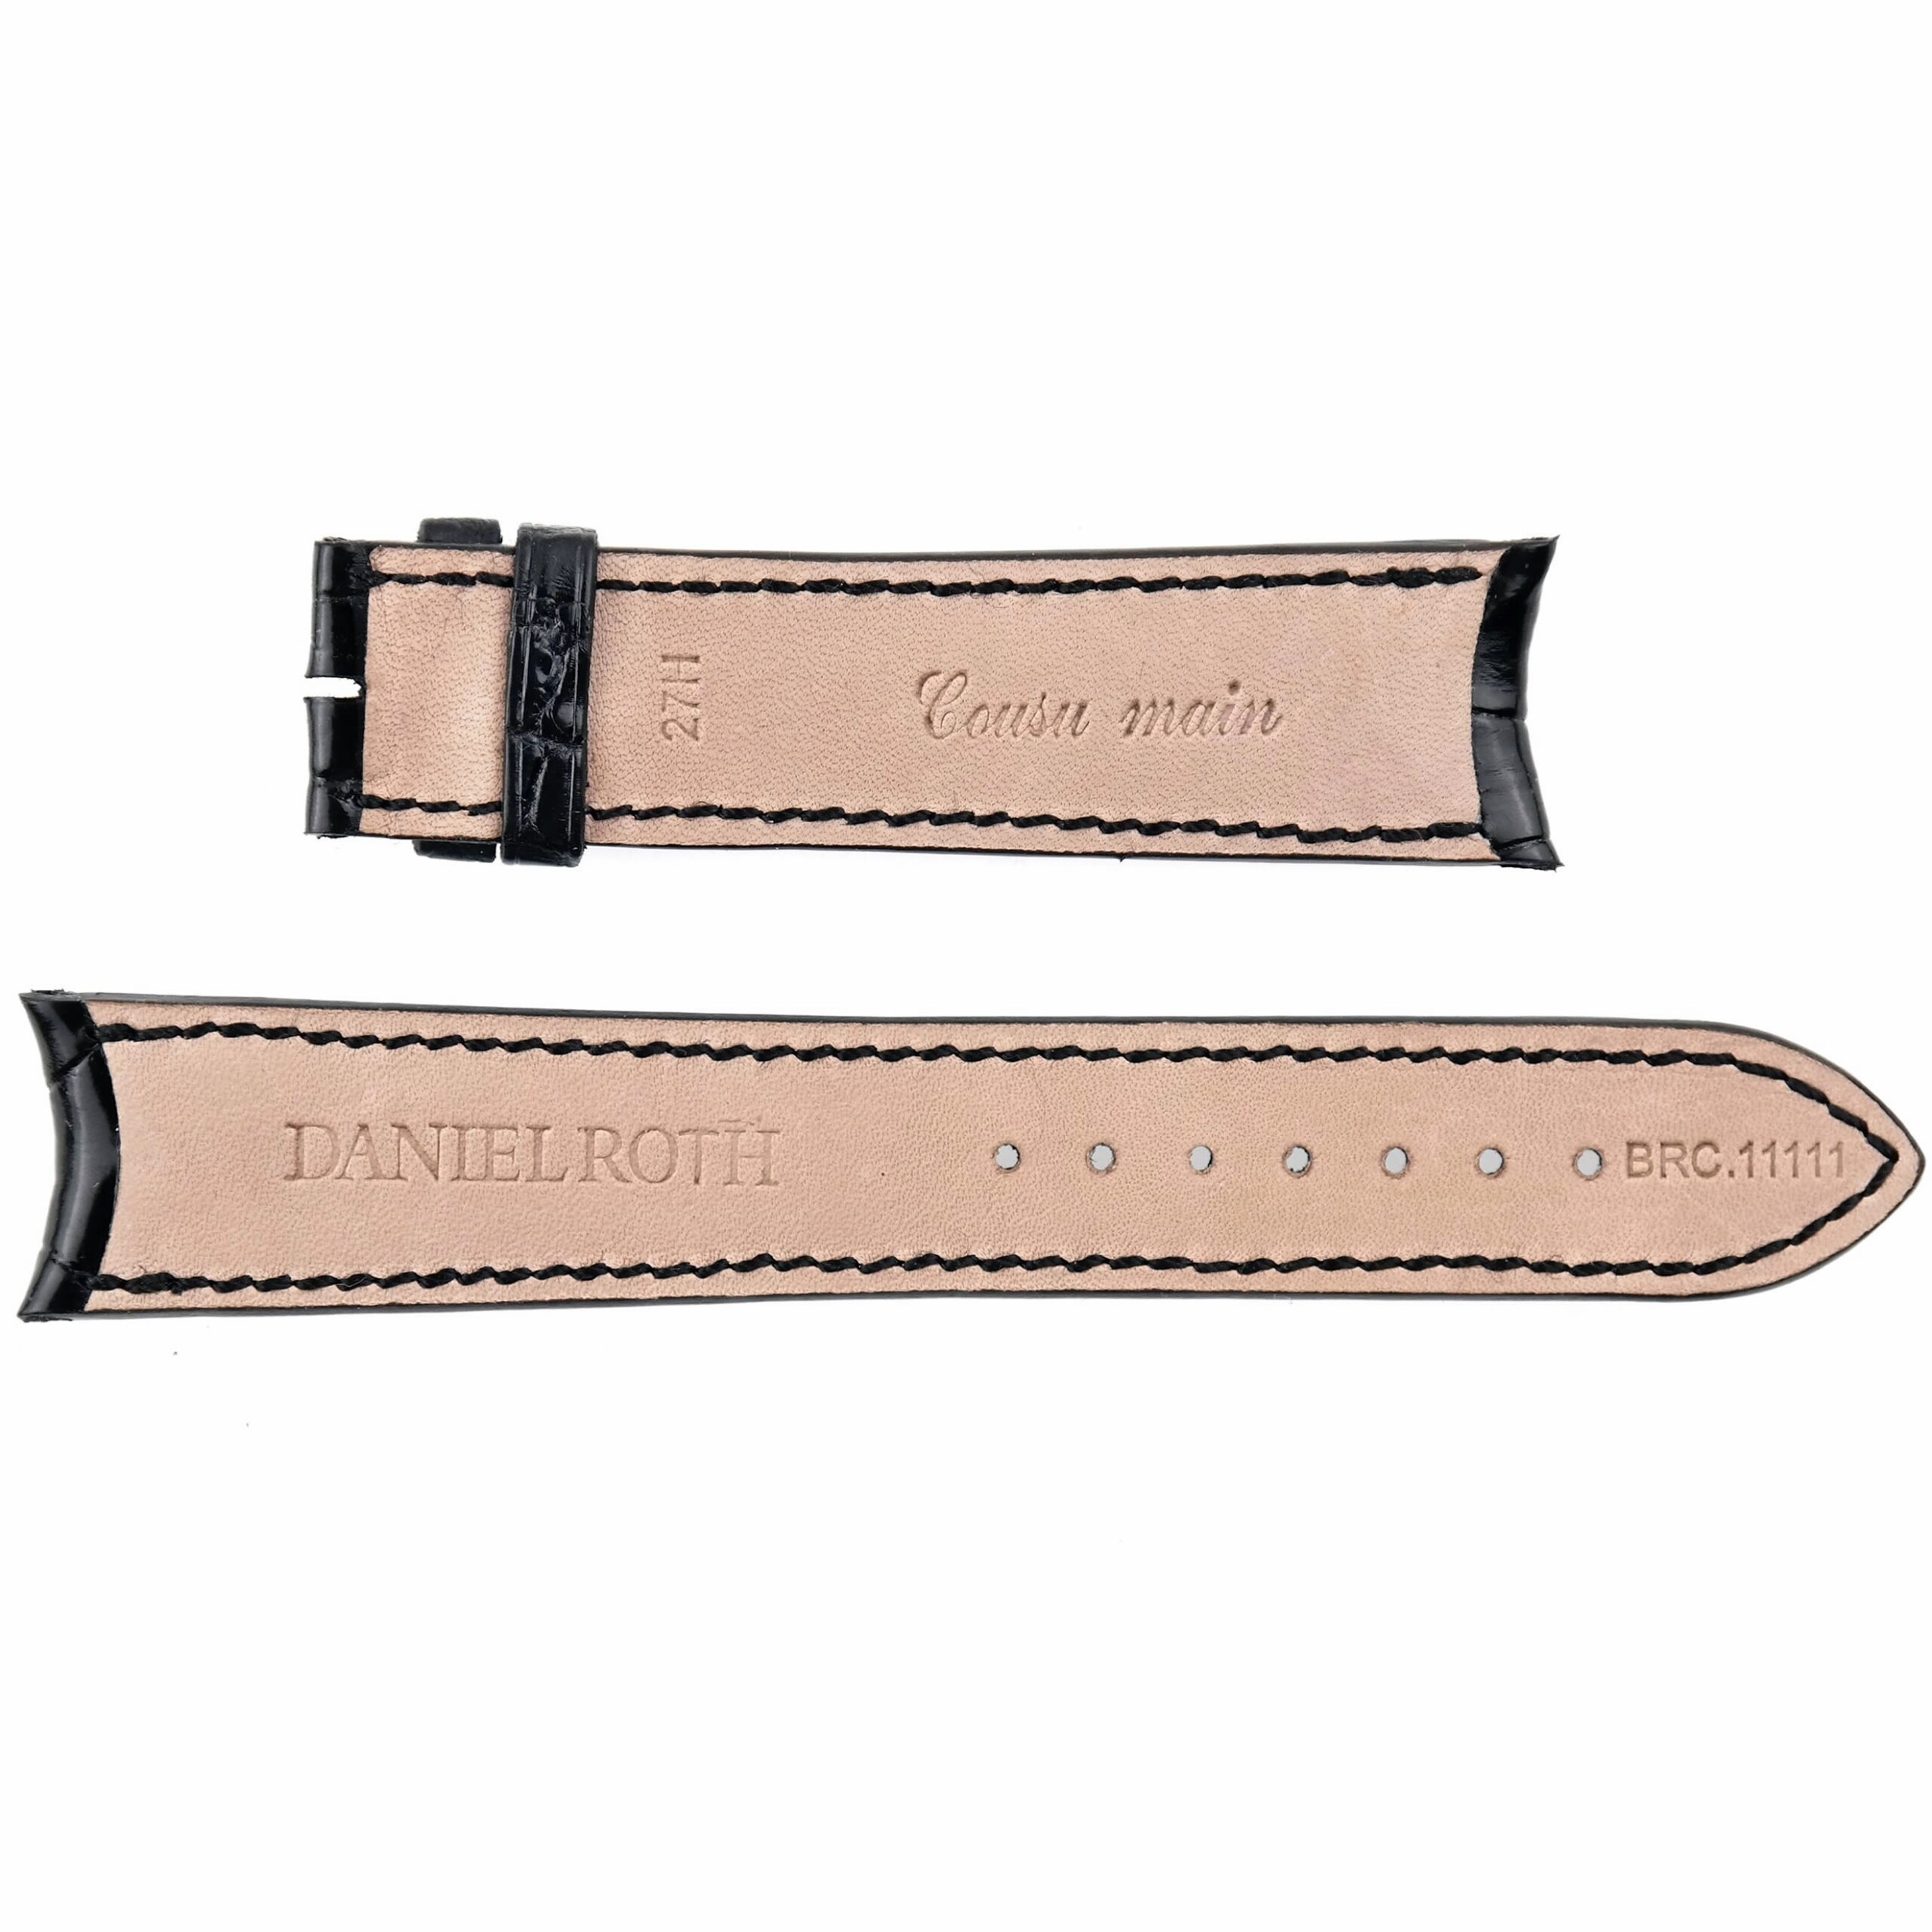 DANIEL ROTH - Luxury Watch Strap - 20 mm - Genuine Leather - BRC.11111